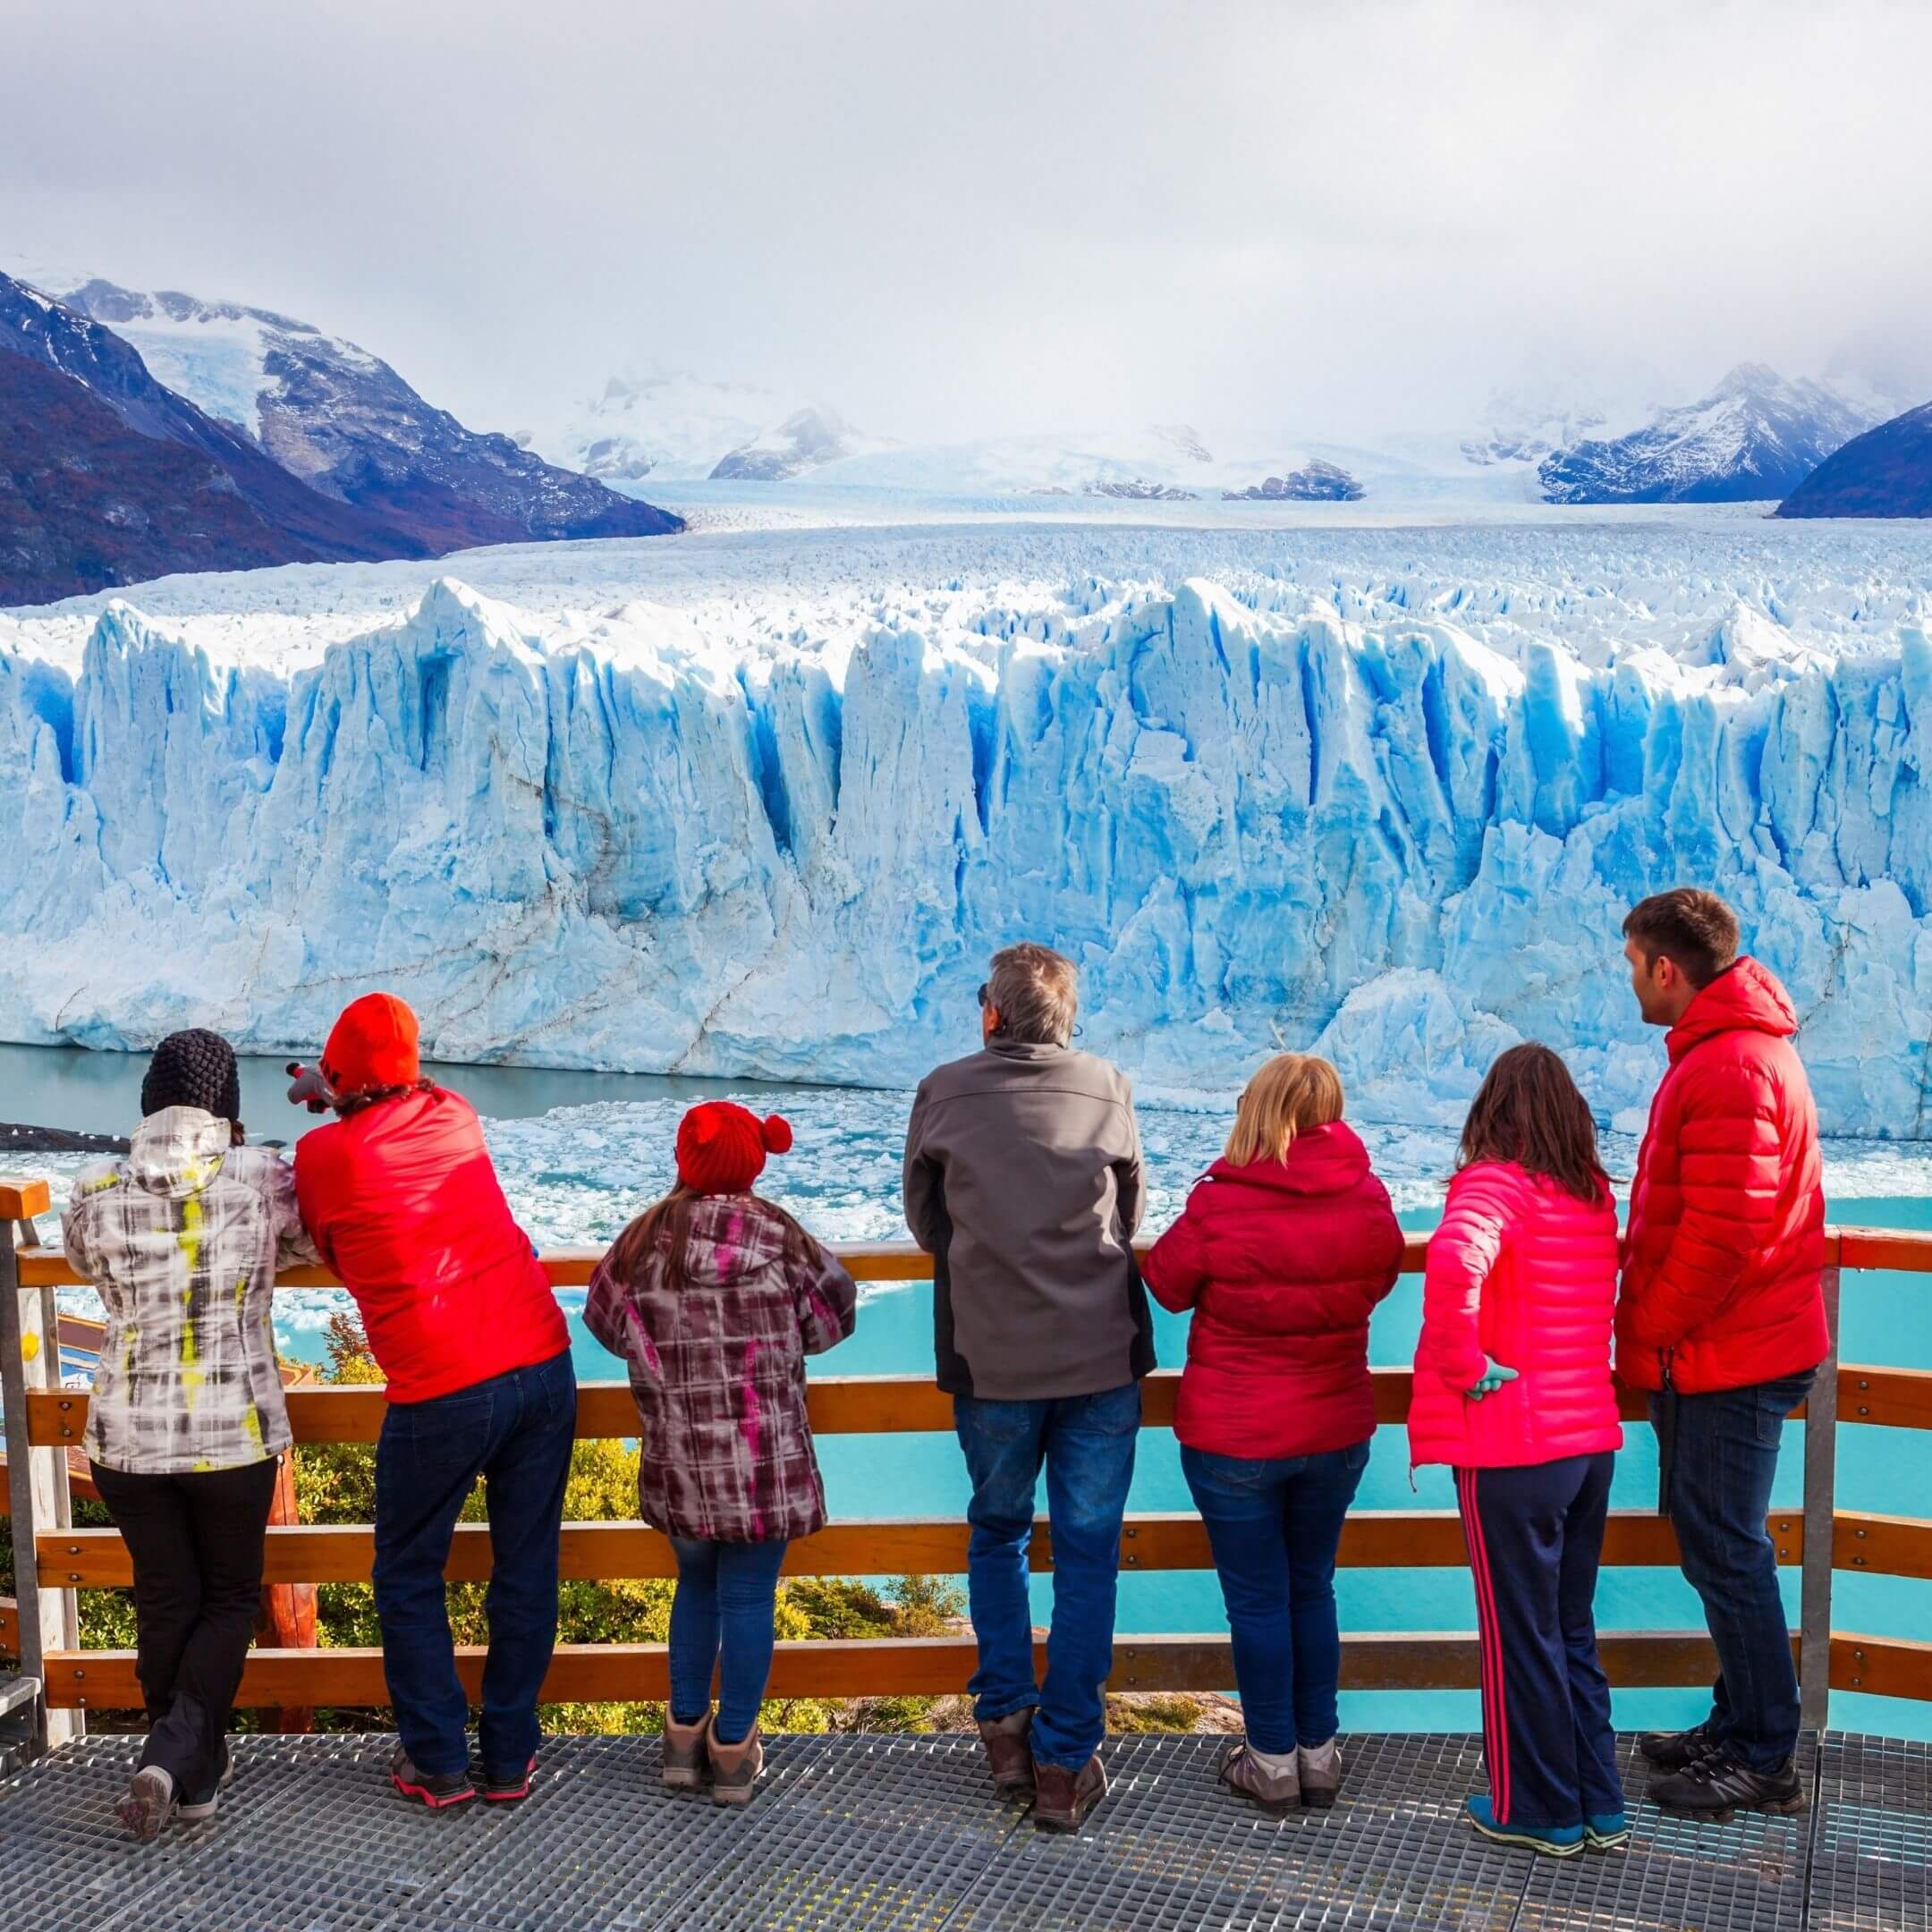 El Calafate - Argentina: O que fazer na cidade das geleiras